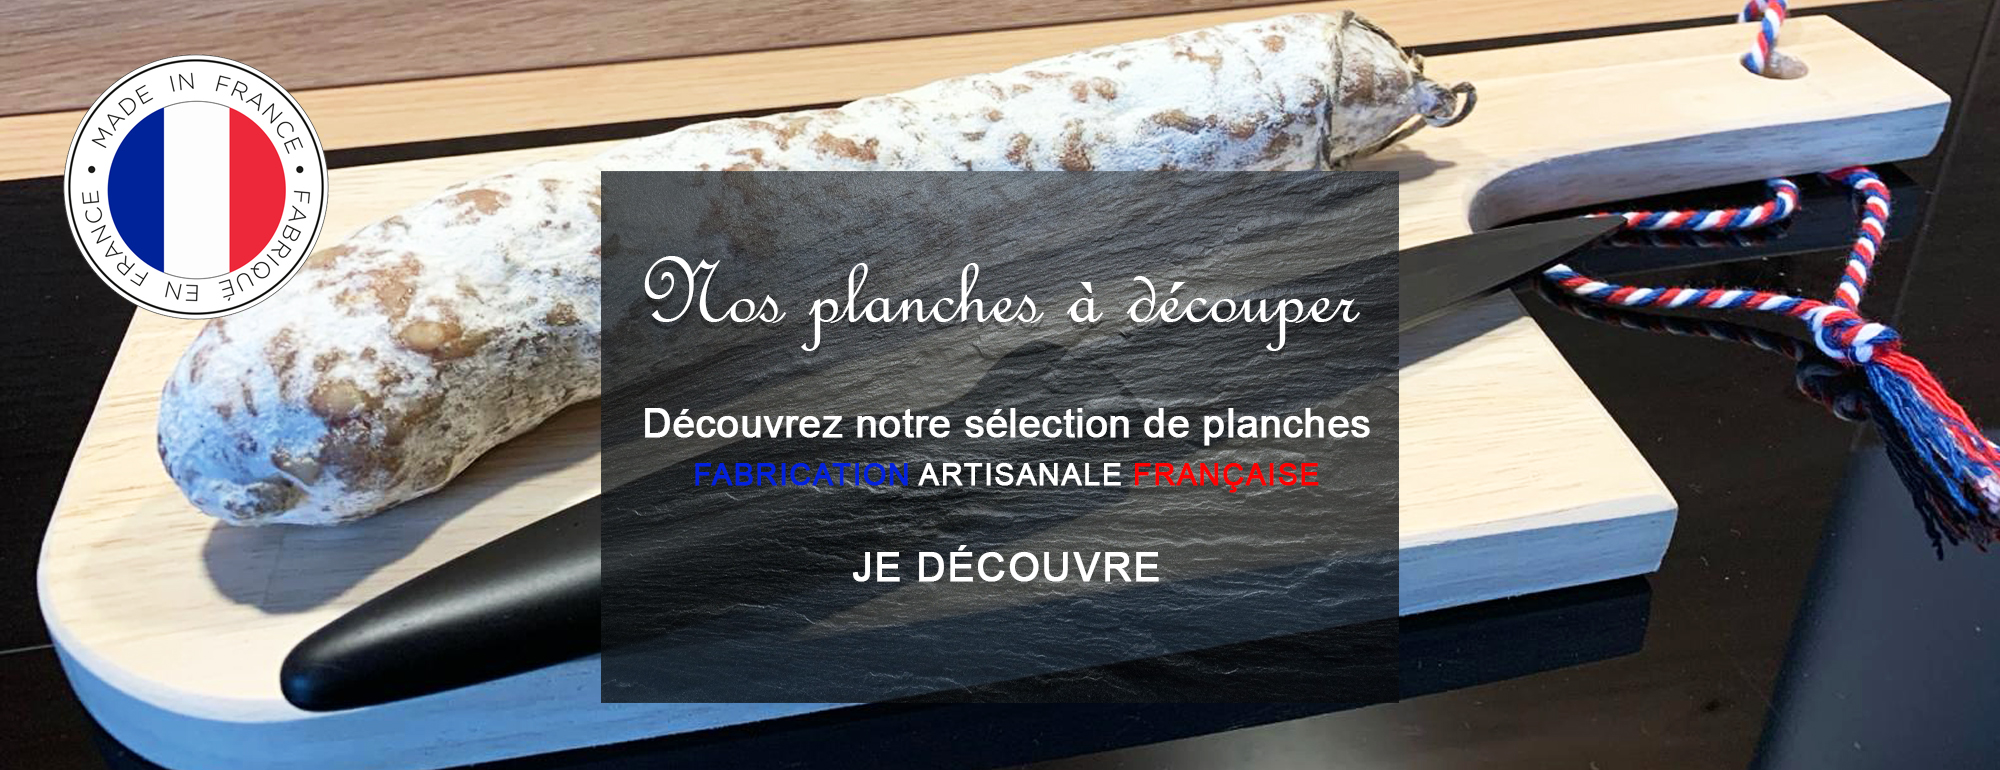 Planche à découper saucisson - Fabriquée en France